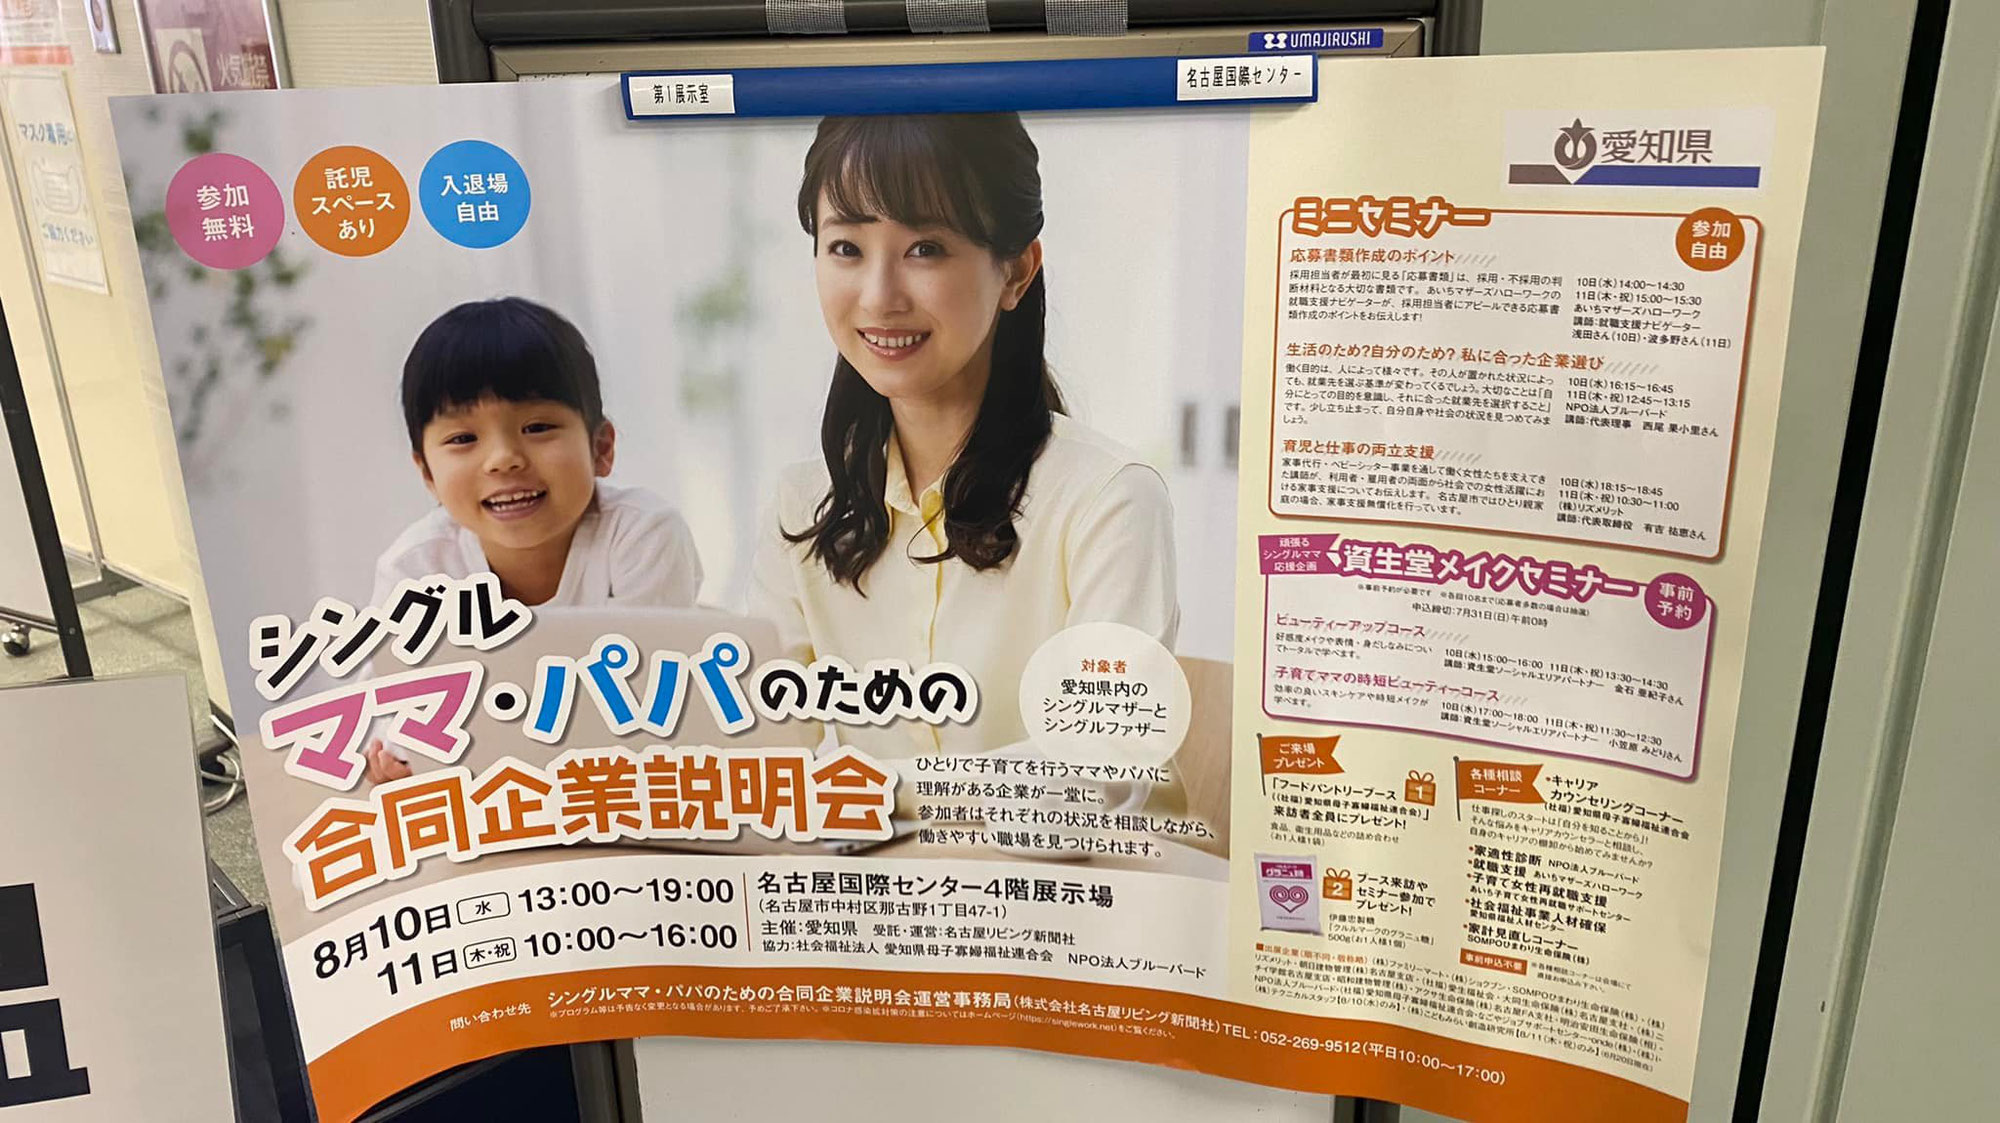 愛知県「シングルママ・パパのための合同企業説明会」のミニセミナー、適職診断を実施しました。（2022年8月10日・11日開催）